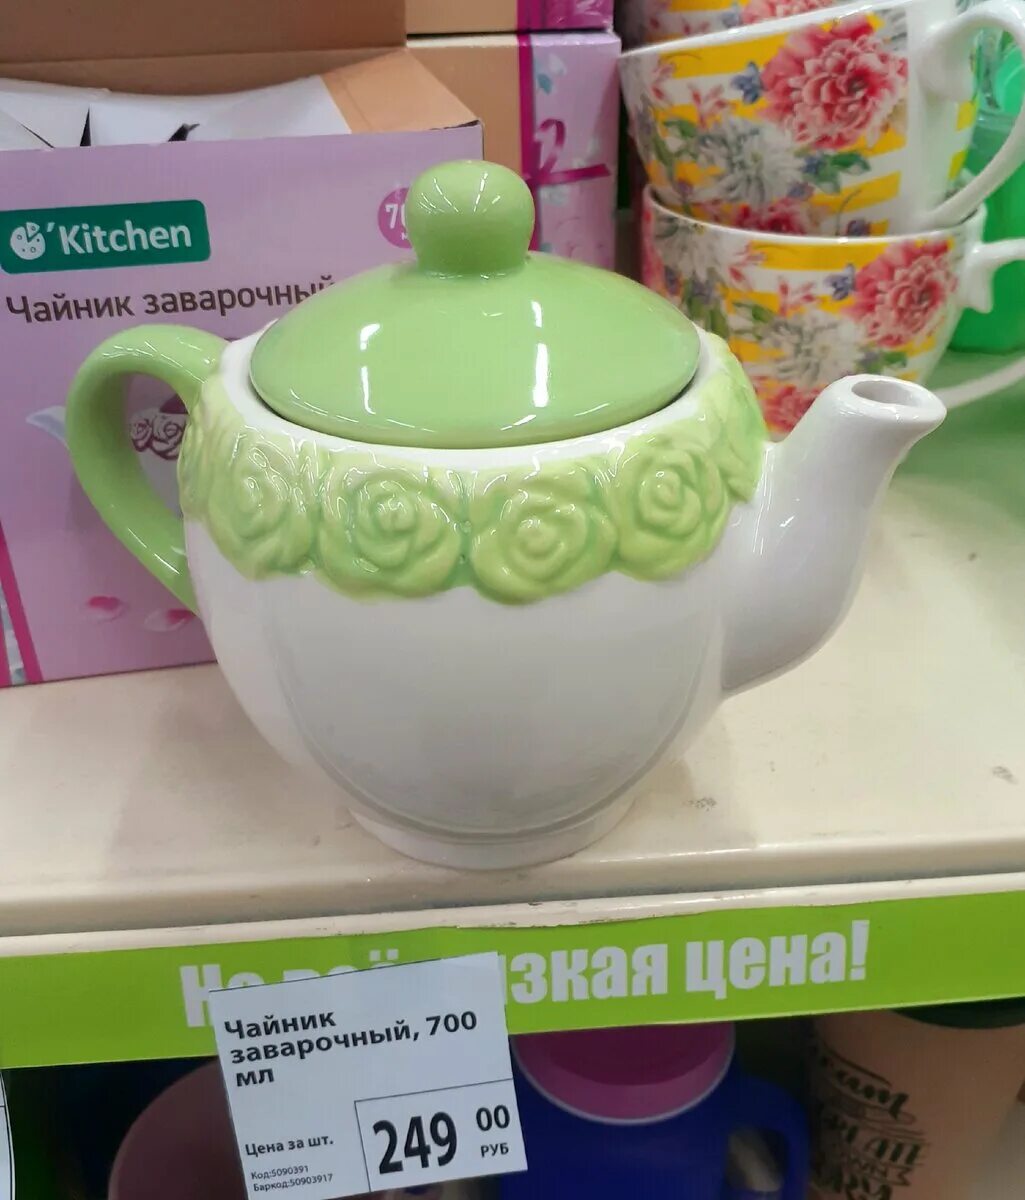 Чайник фикс прайс. Fix Price чайник. Чайник заварочный зелёный с цветочками Fix Price. Чайник заварочный фикс прайс. Чайник керамический заварочный зеленый в фикс прайсе локальный код.